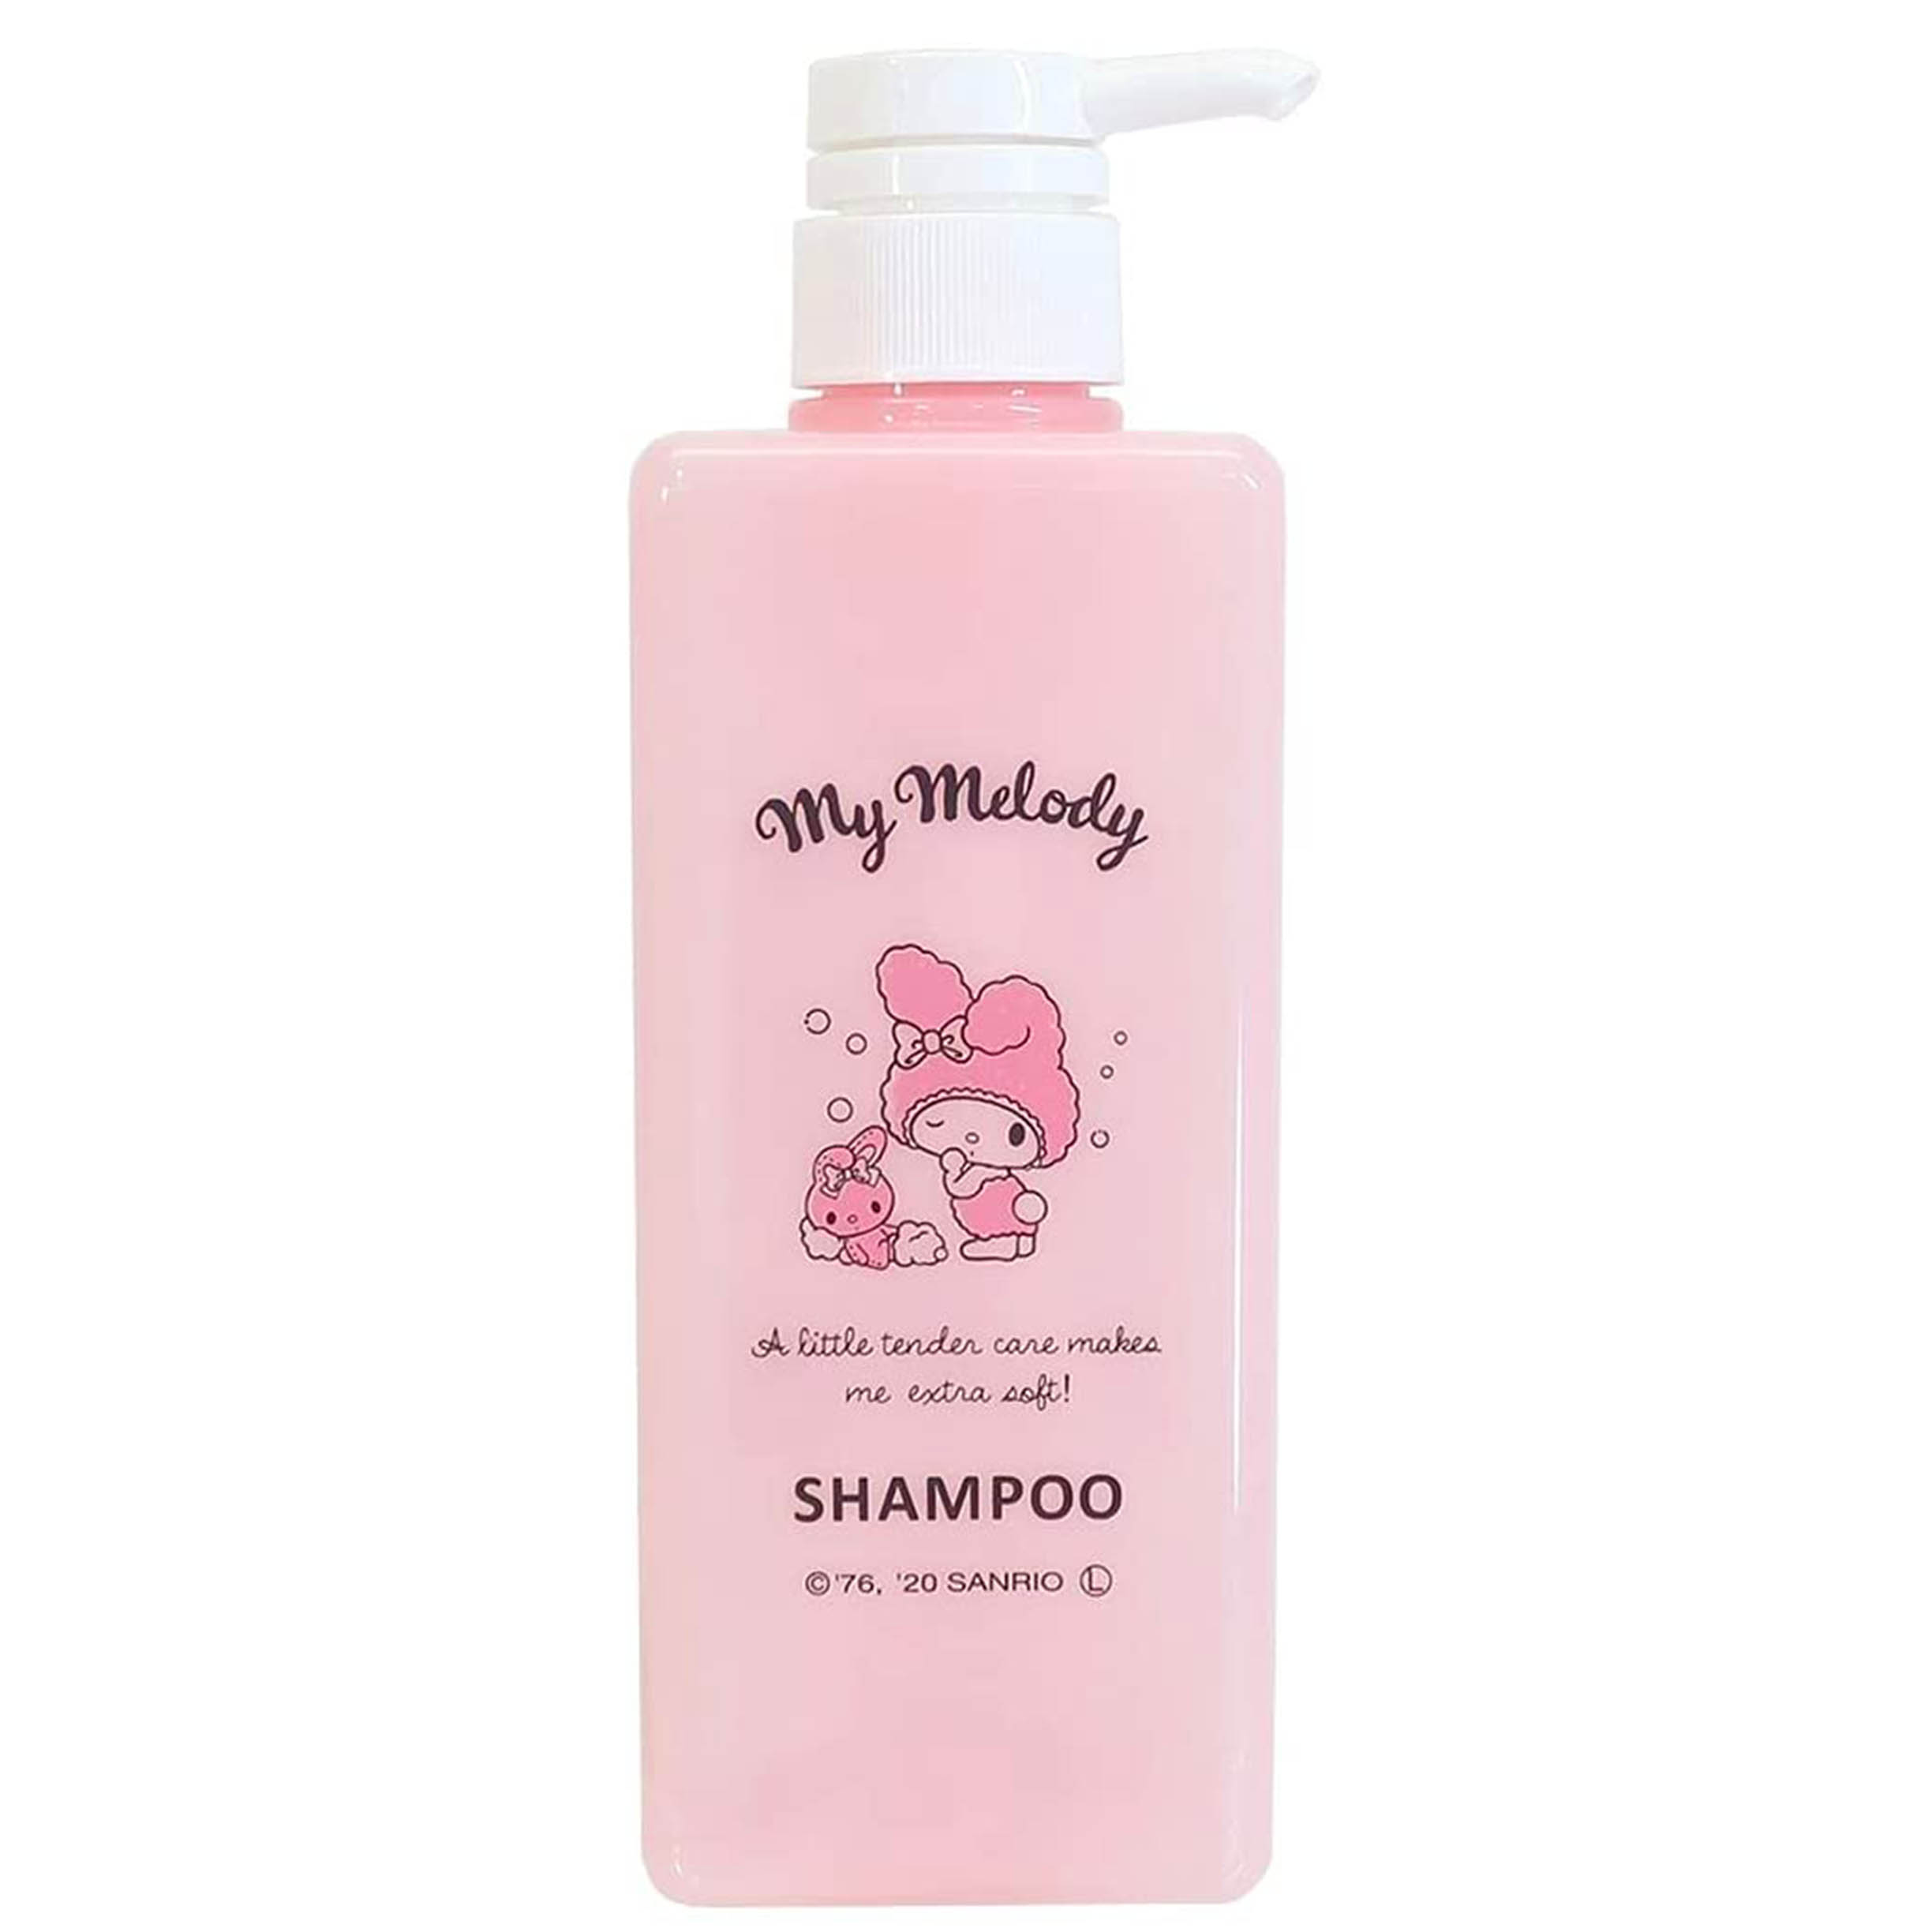 洗髮精按壓空瓶 600ml-美樂蒂 SHAMPOO 三麗鷗 Sanrio 日本進口正版授權